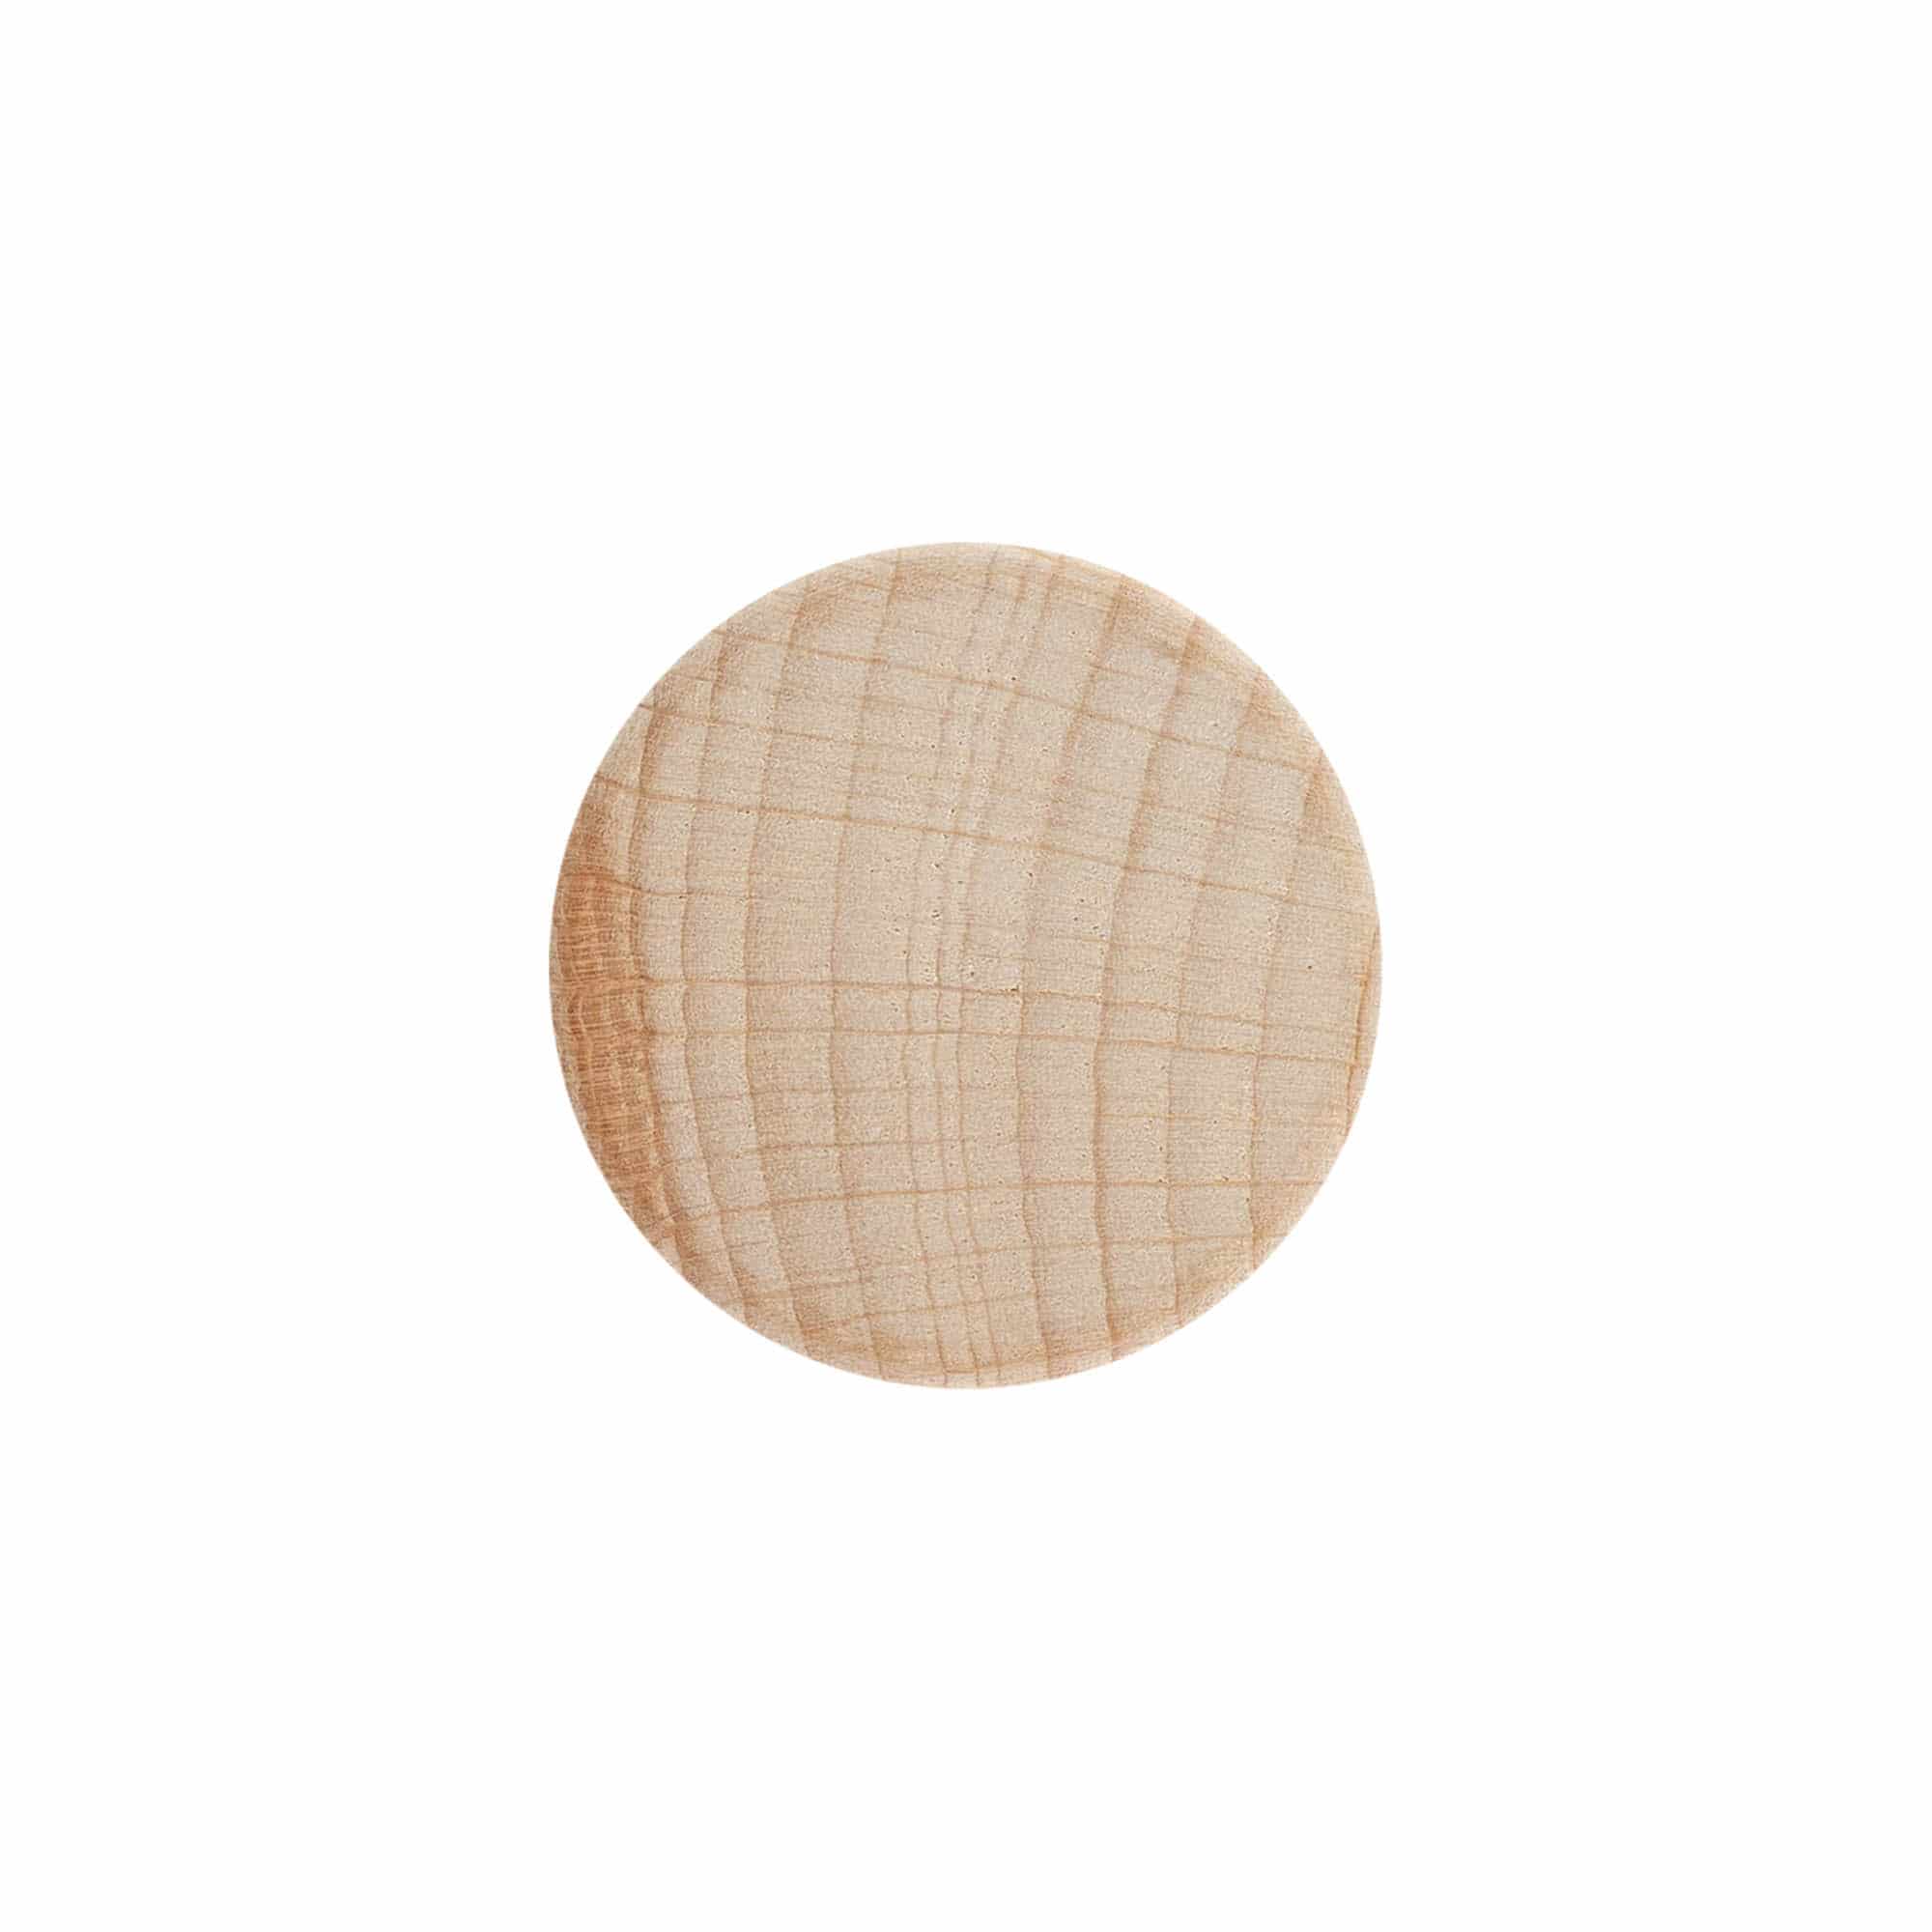 Zakrętka, drewno, kolor beżowy, do zamknięcia: GPI 33/400